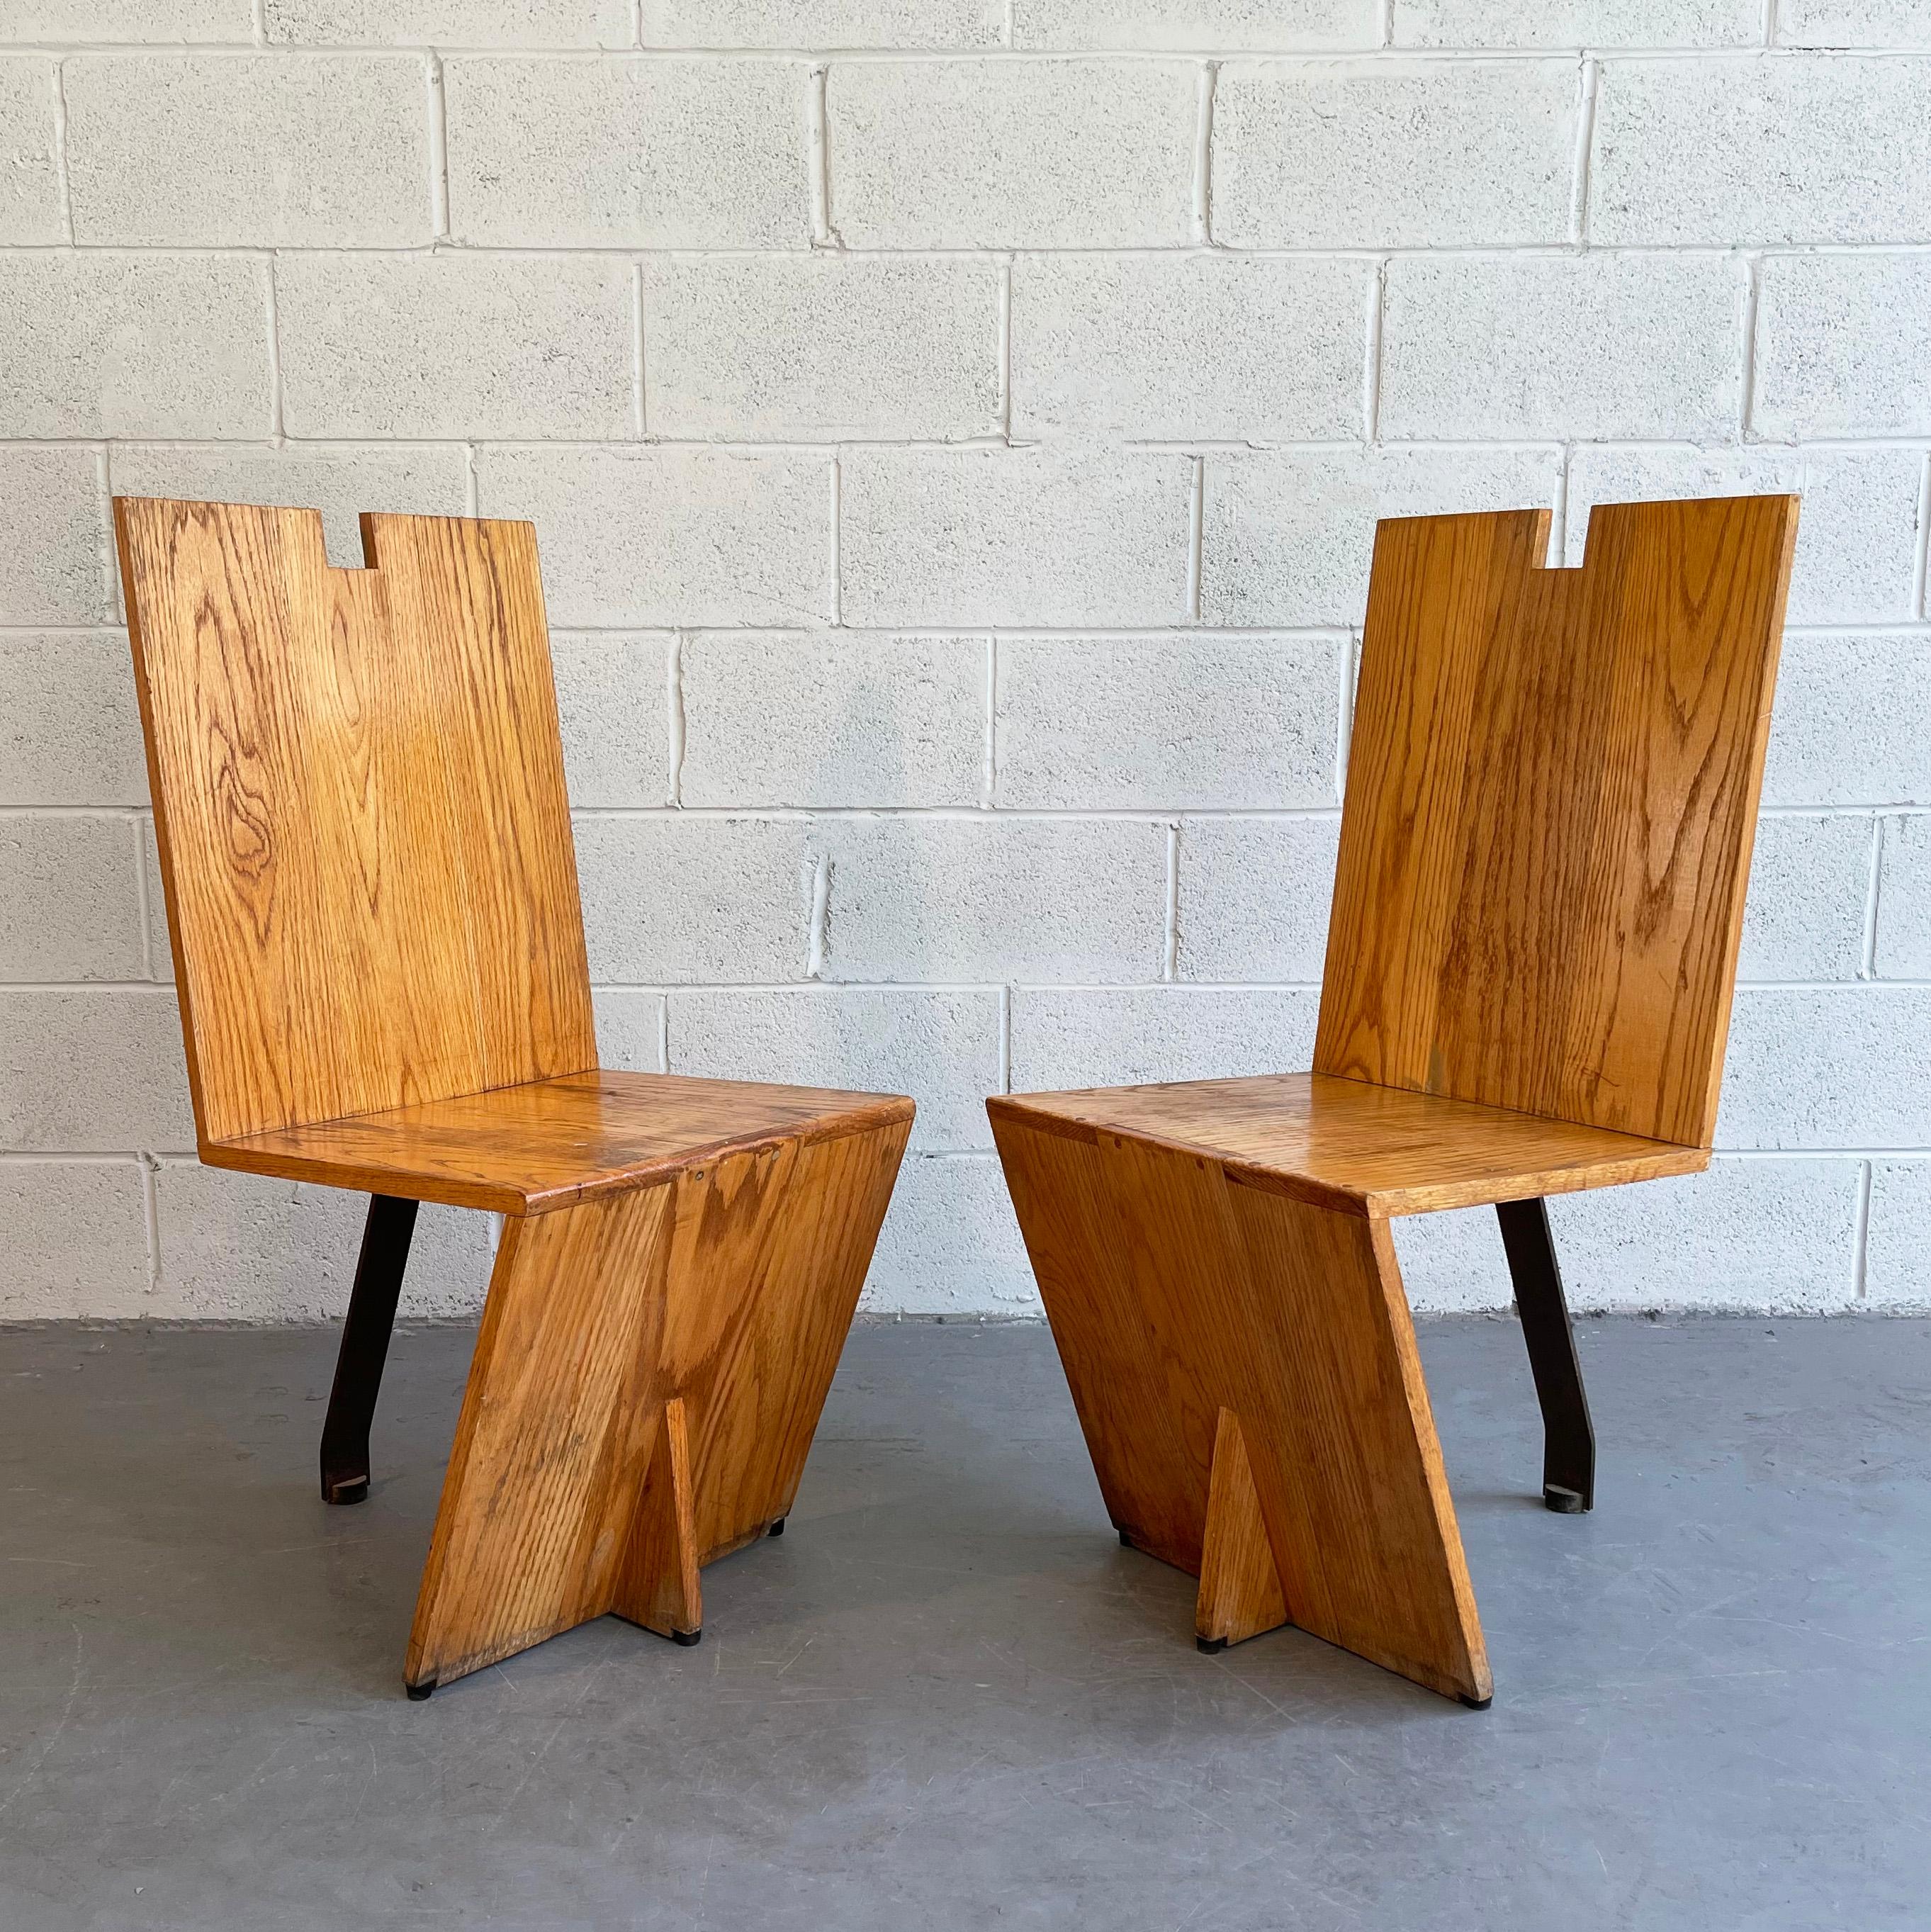 Ein Paar minimalistischer, postmoderner, handwerklich gefertigter Stühle mit kantigen Eichenlehnen, -sitzen und -vorderseiten und einem einzelnen Stahlbein im Rücken. Aus allen Blickwinkeln interessant.